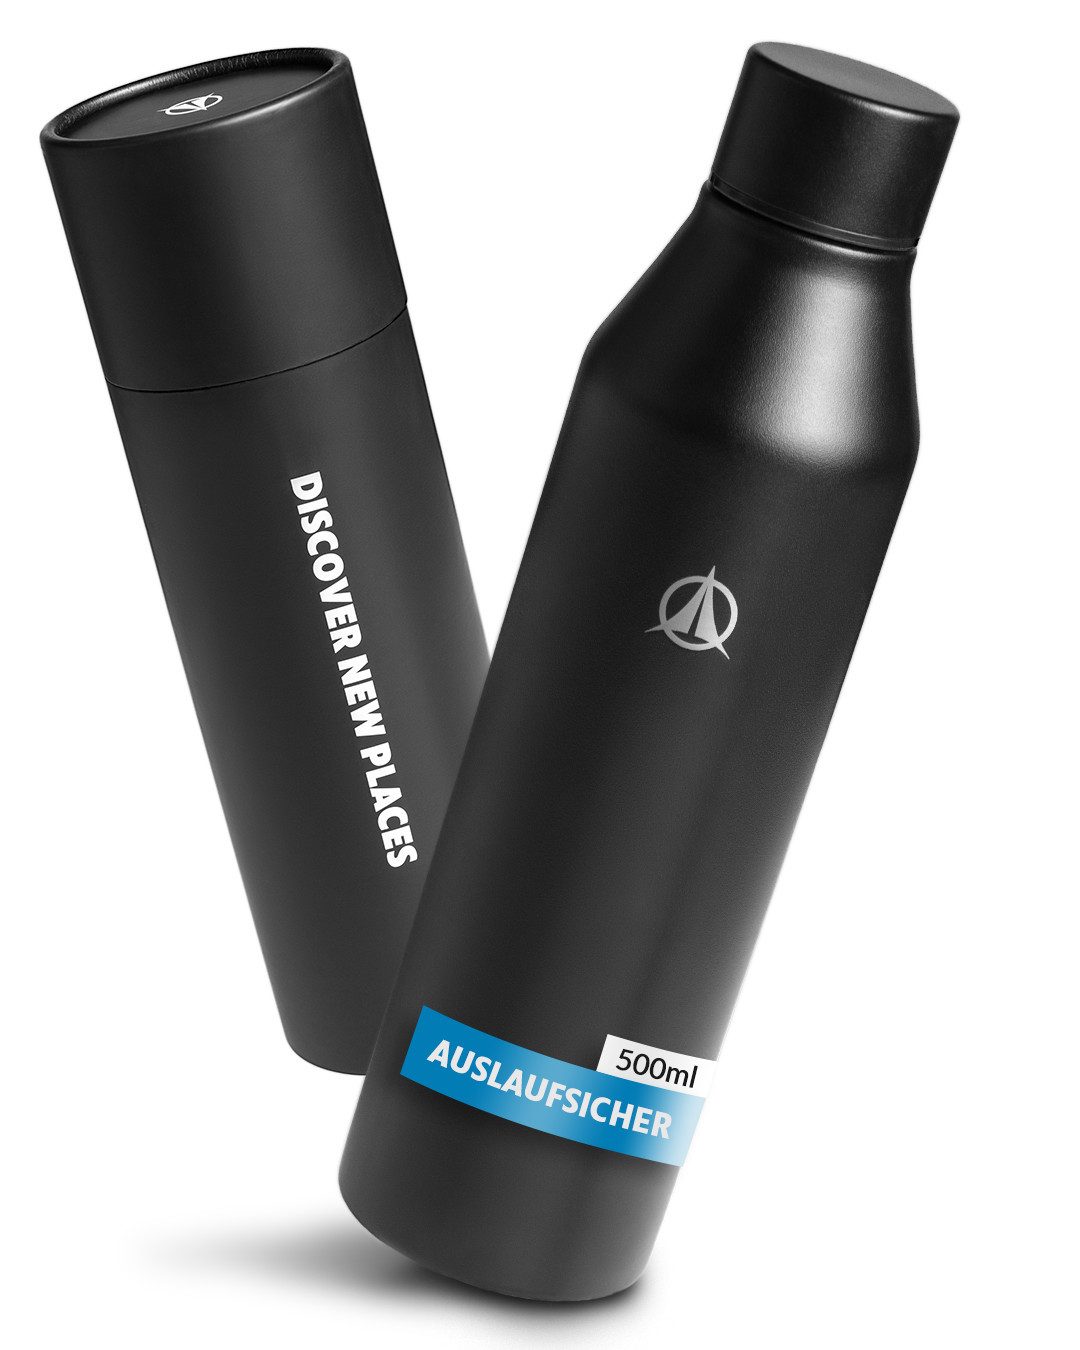 Terra Peak Thermoflasche, Edelstahl Trinkflasche auslaufsicher 500ml Kohlensäure geeignet